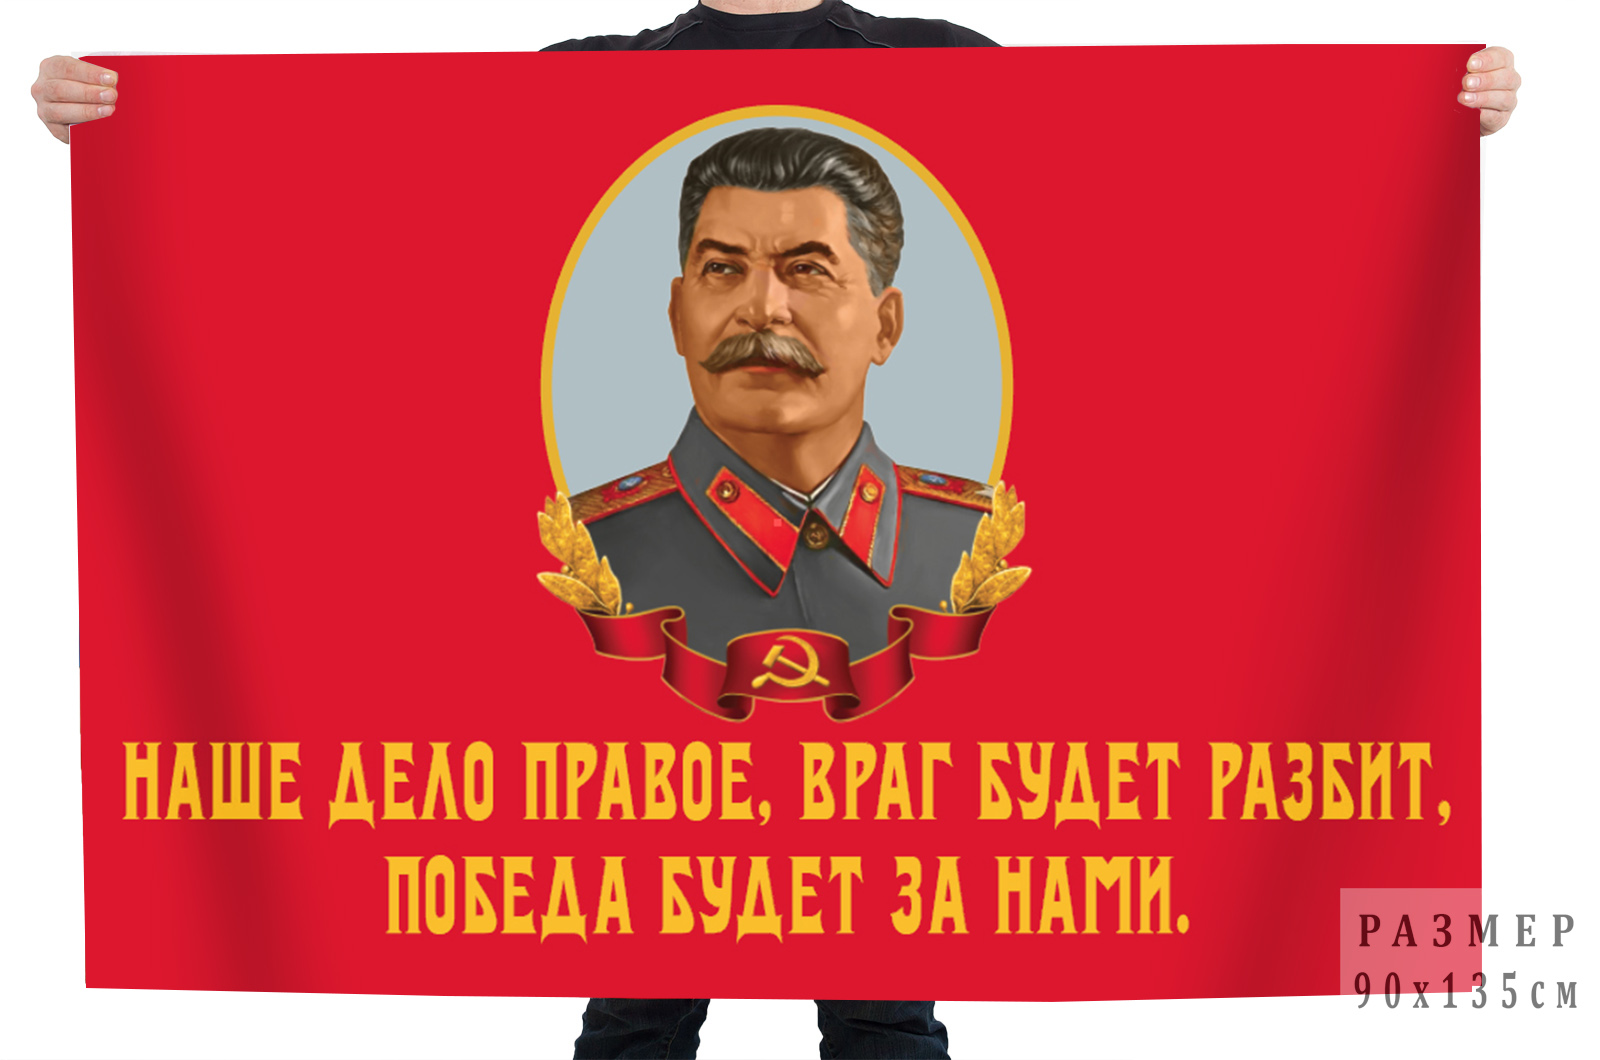 Купить флаг со Сталиным "Наше дело правое. Враг будет разбит. Победа будет за нами!"